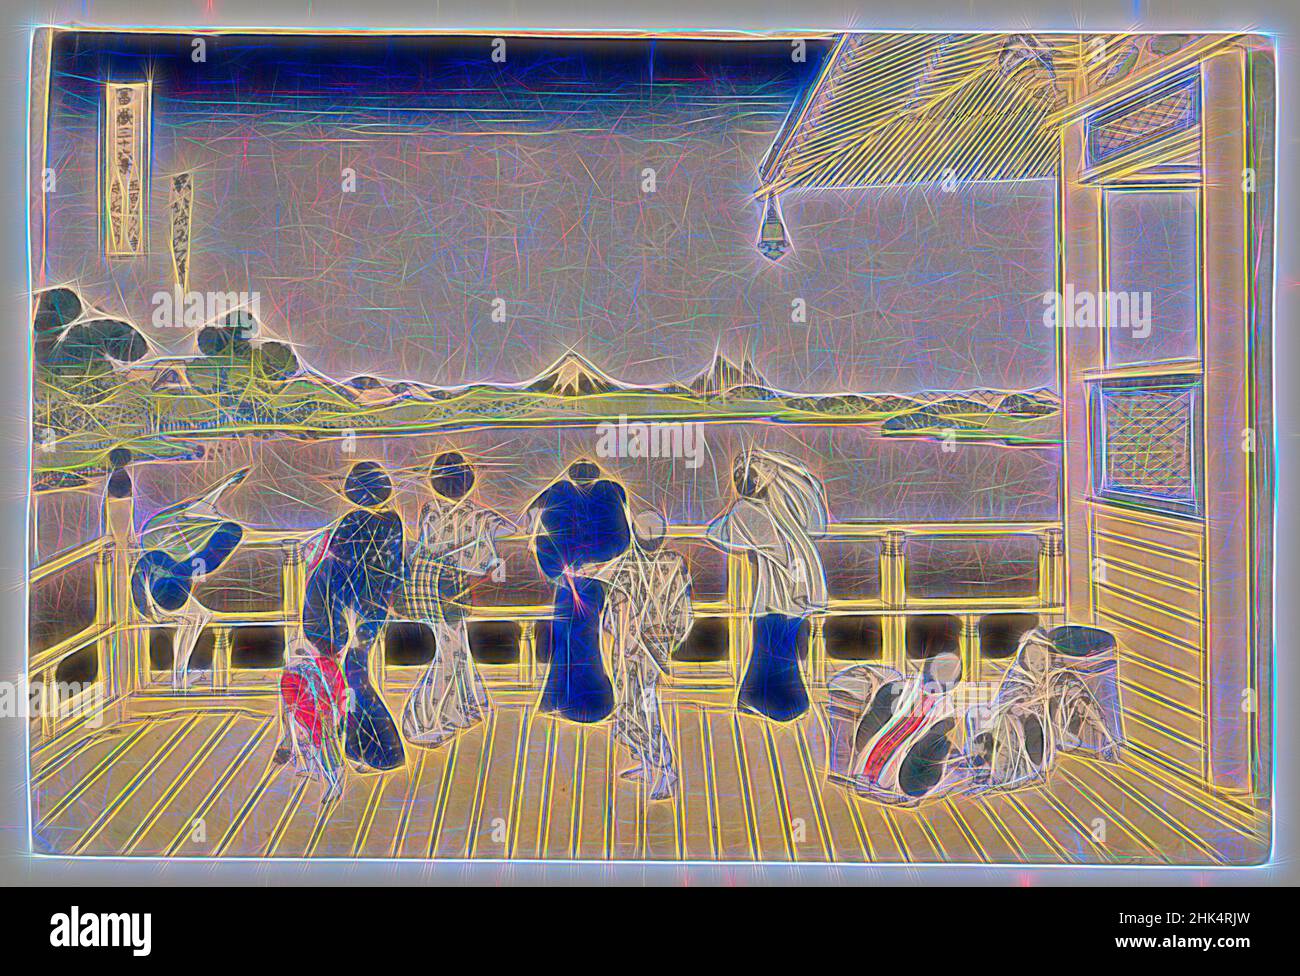 Inspiré par Fuji de la plate-forme de Sasayedo, Katsushika Hokusai, japonais, 1760-1849, Imprimer, Japon, 19th siècle, période Edo, 10 1/16 x 15 1/16 po., 25,5 x 38,3 cm, repensé par Artotop. L'art classique réinventé avec une touche moderne. Conception de lumière chaleureuse et gaie, de luminosité et de rayonnement de lumière. La photographie s'inspire du surréalisme et du futurisme, embrassant l'énergie dynamique de la technologie moderne, du mouvement, de la vitesse et révolutionne la culture Banque D'Images